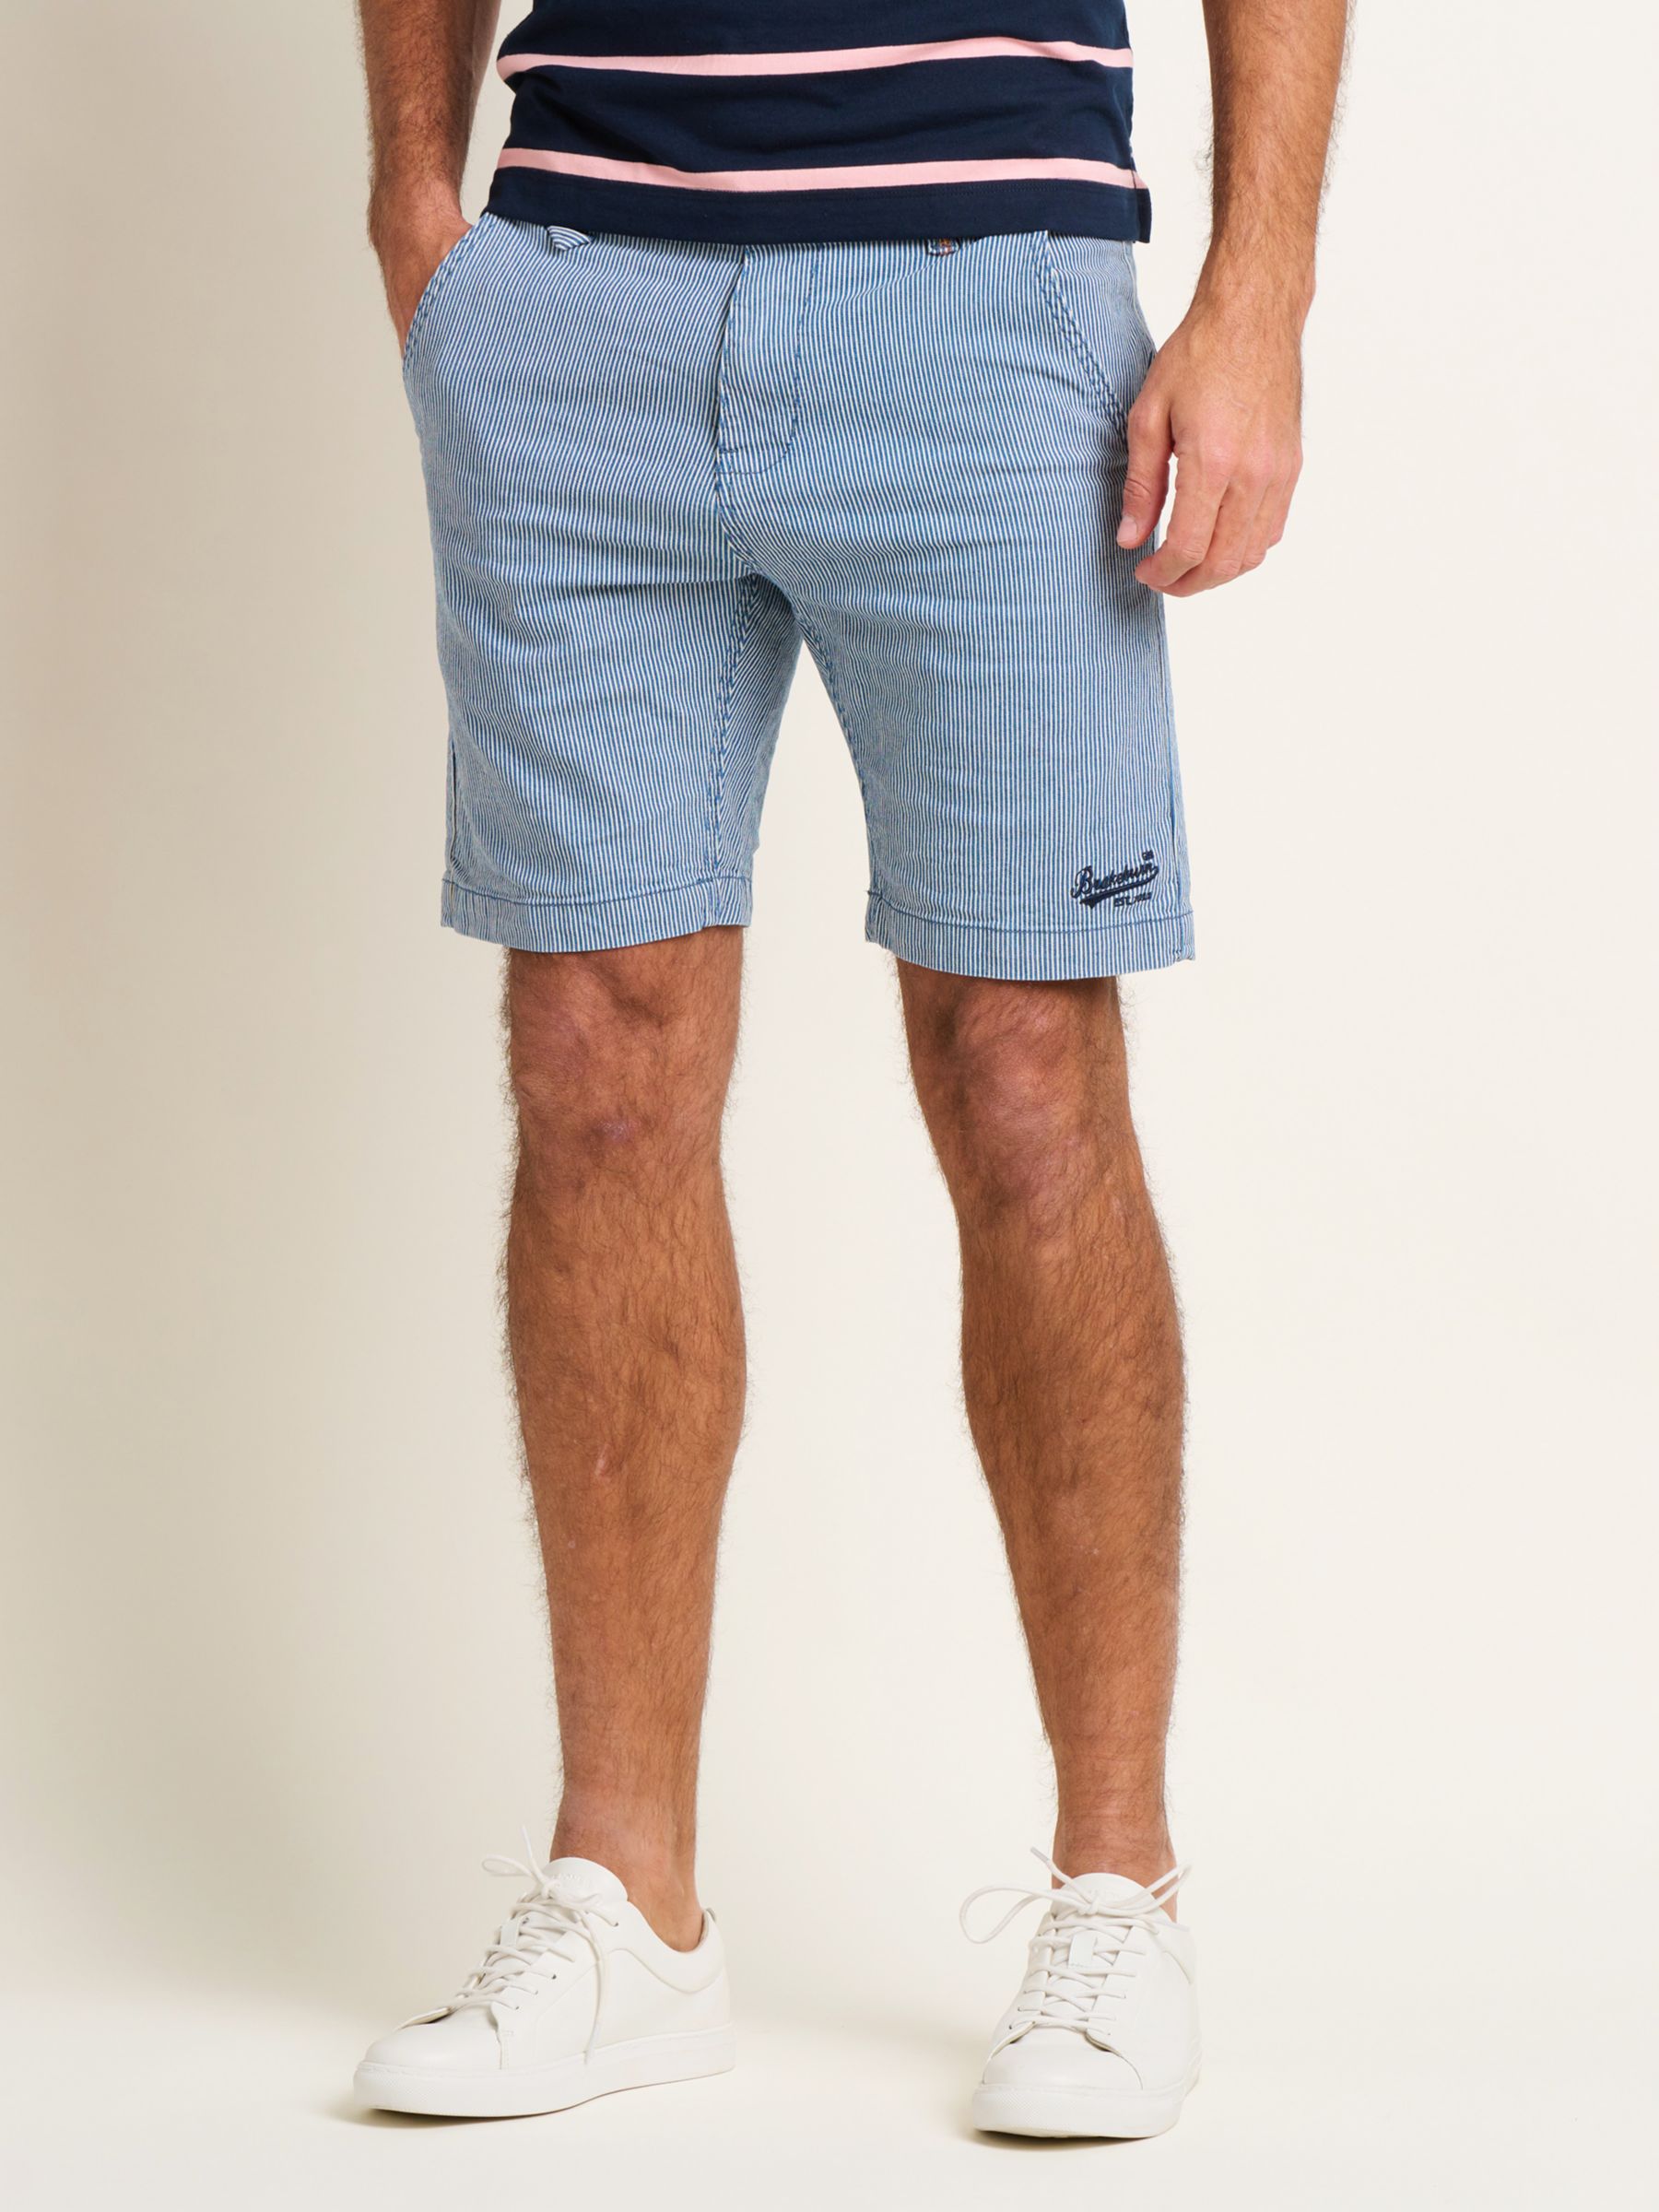 Brakeburn Stripe Chino Shorts, Blue/White, 32